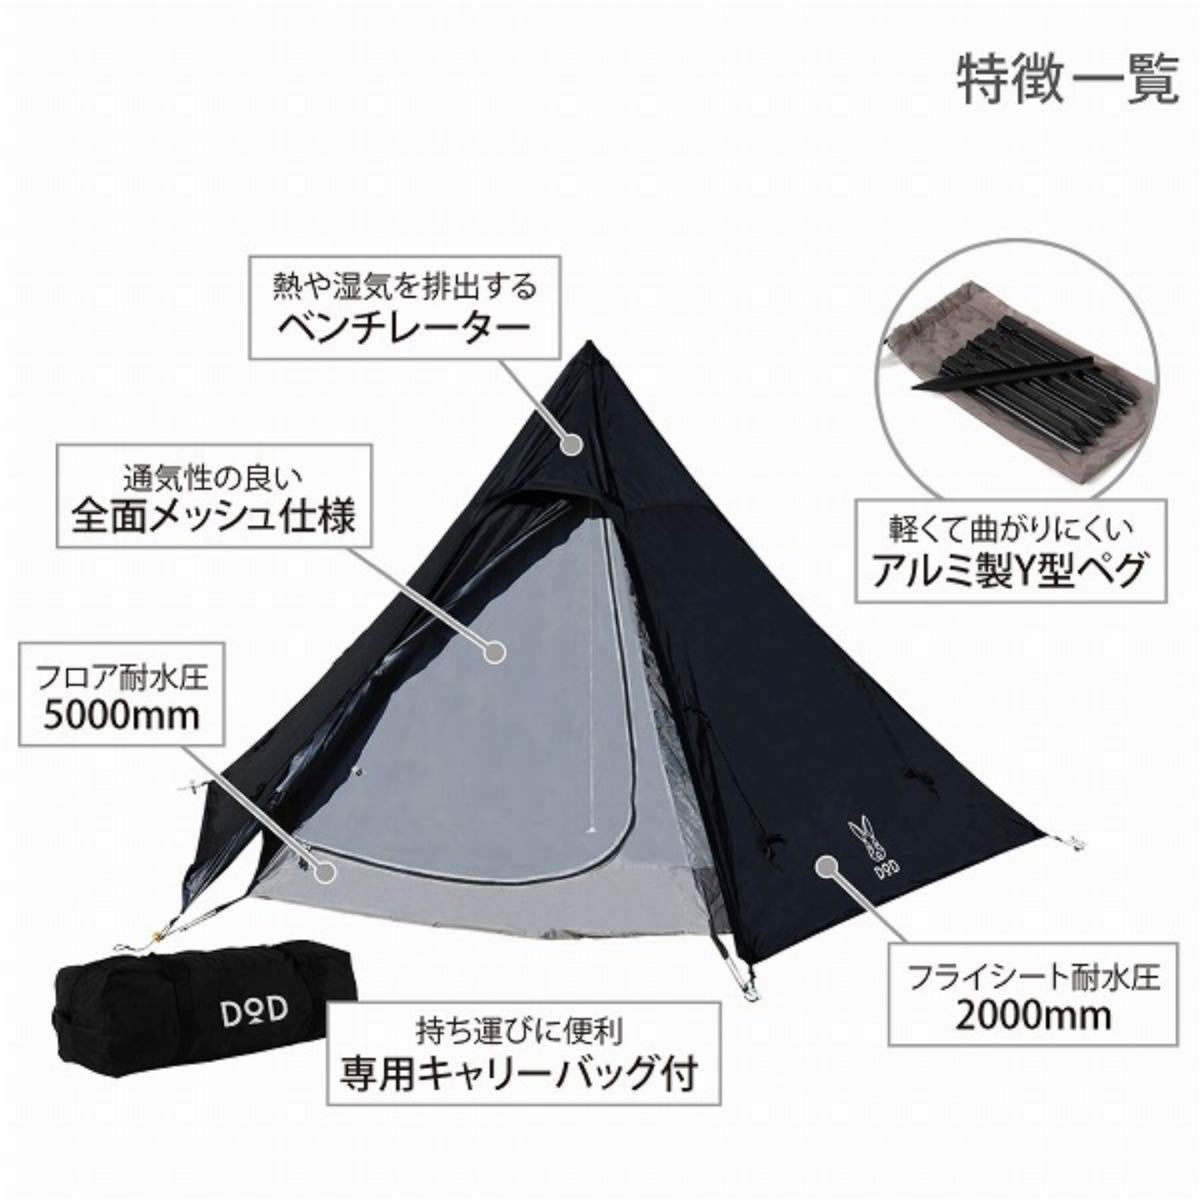 【新品未使用】DOD ワンポールテントS 3人用 テント 